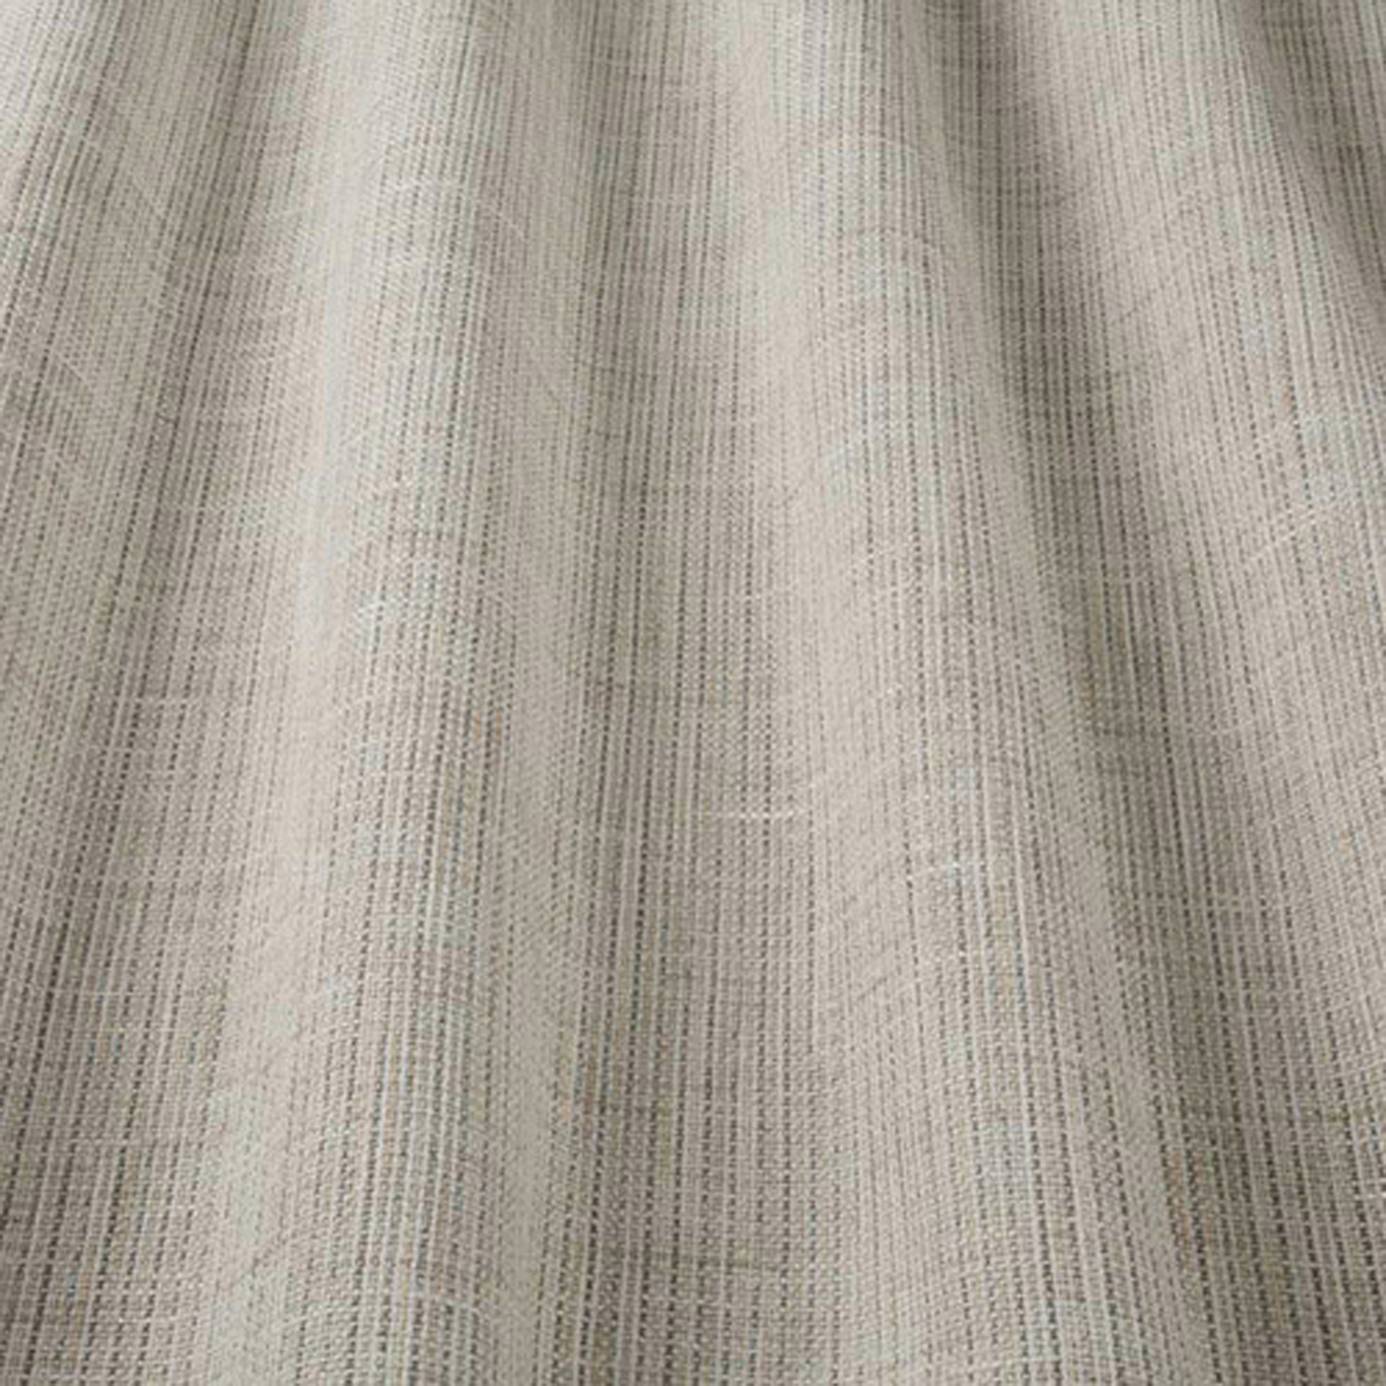 Saxon Fabric - Natural (SAXONNATURAL) - iLiv Plains & Textures 6 Collection